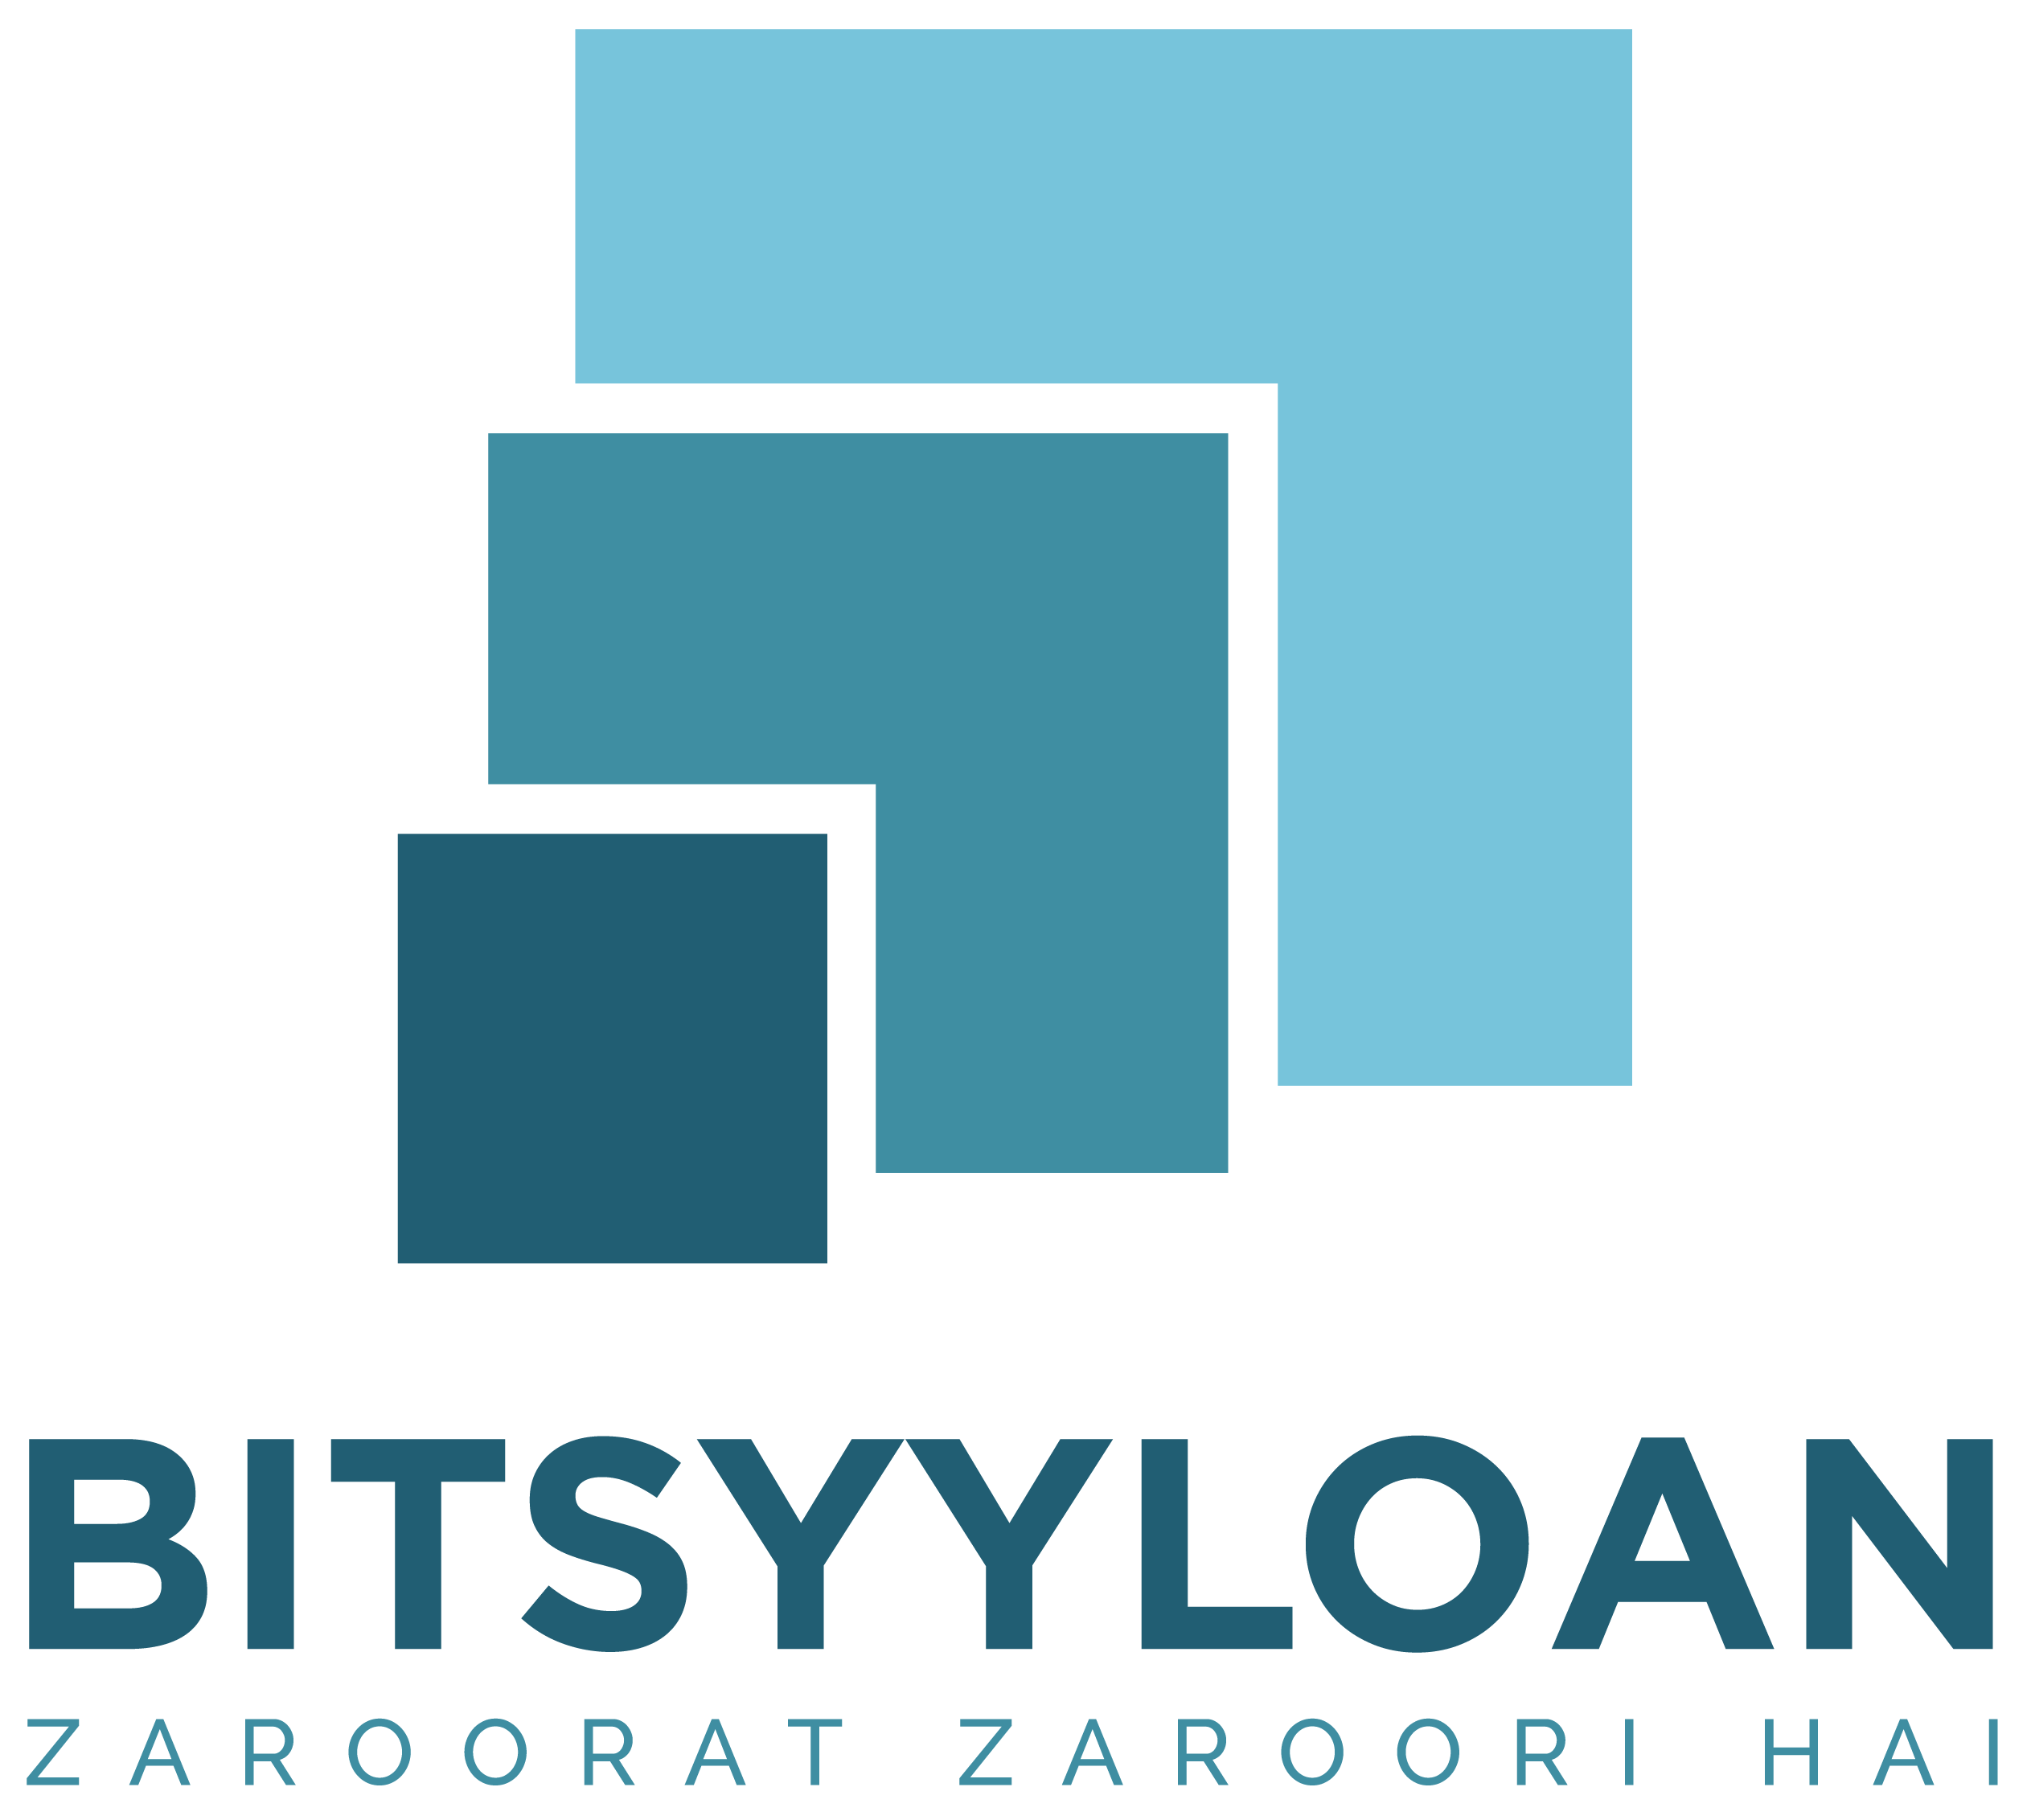 Bitsyyloan - Loan Company Website